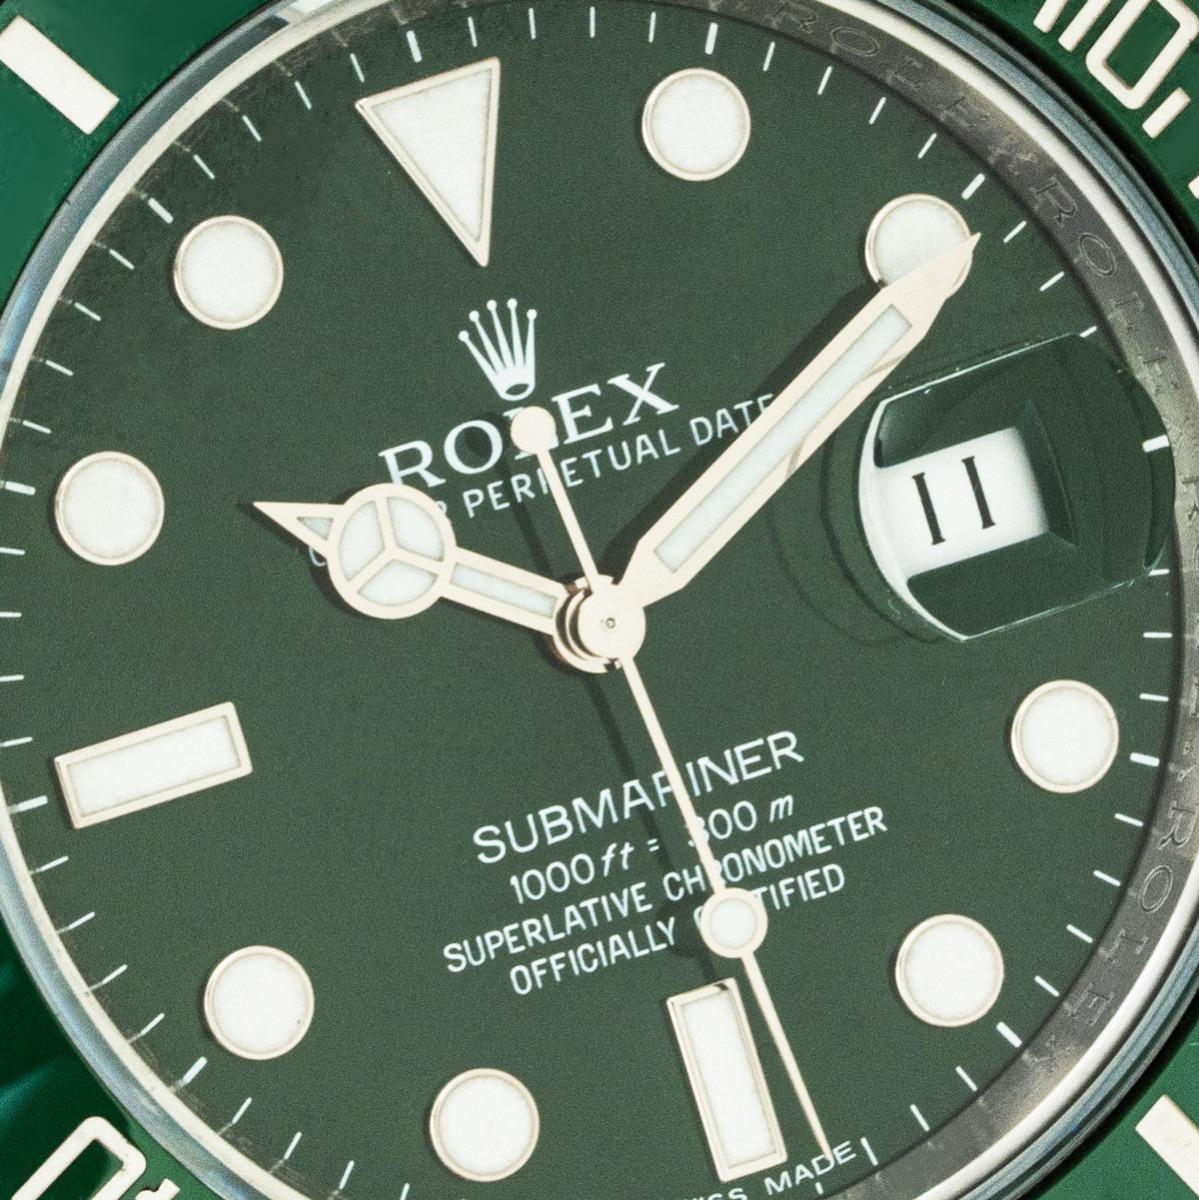 Eine Submariner Date Hulk aus Oystersteel von Rolex. Mit grünem Zifferblatt und grüner, einseitig drehbarer Keramiklünette mit 60-Minuten-Teilung. Ausgestattet mit einem kratzfesten Saphirglas, einem Automatikwerk und einem Oyster-Armband mit